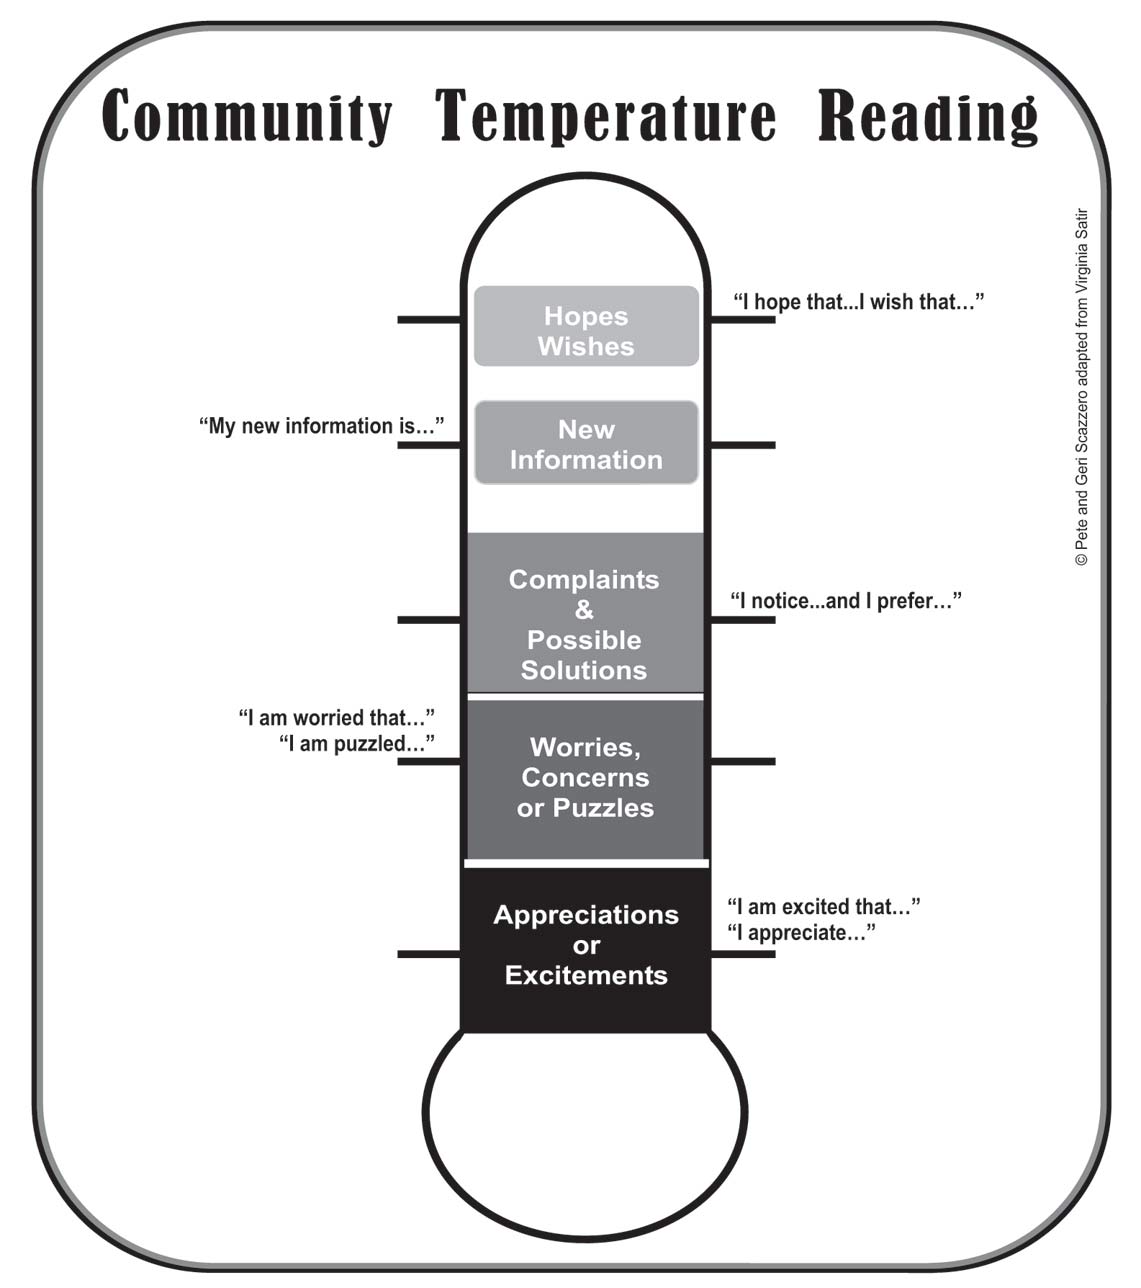 The Community Temperature Taker prepared by Pete and Geri Scazzero